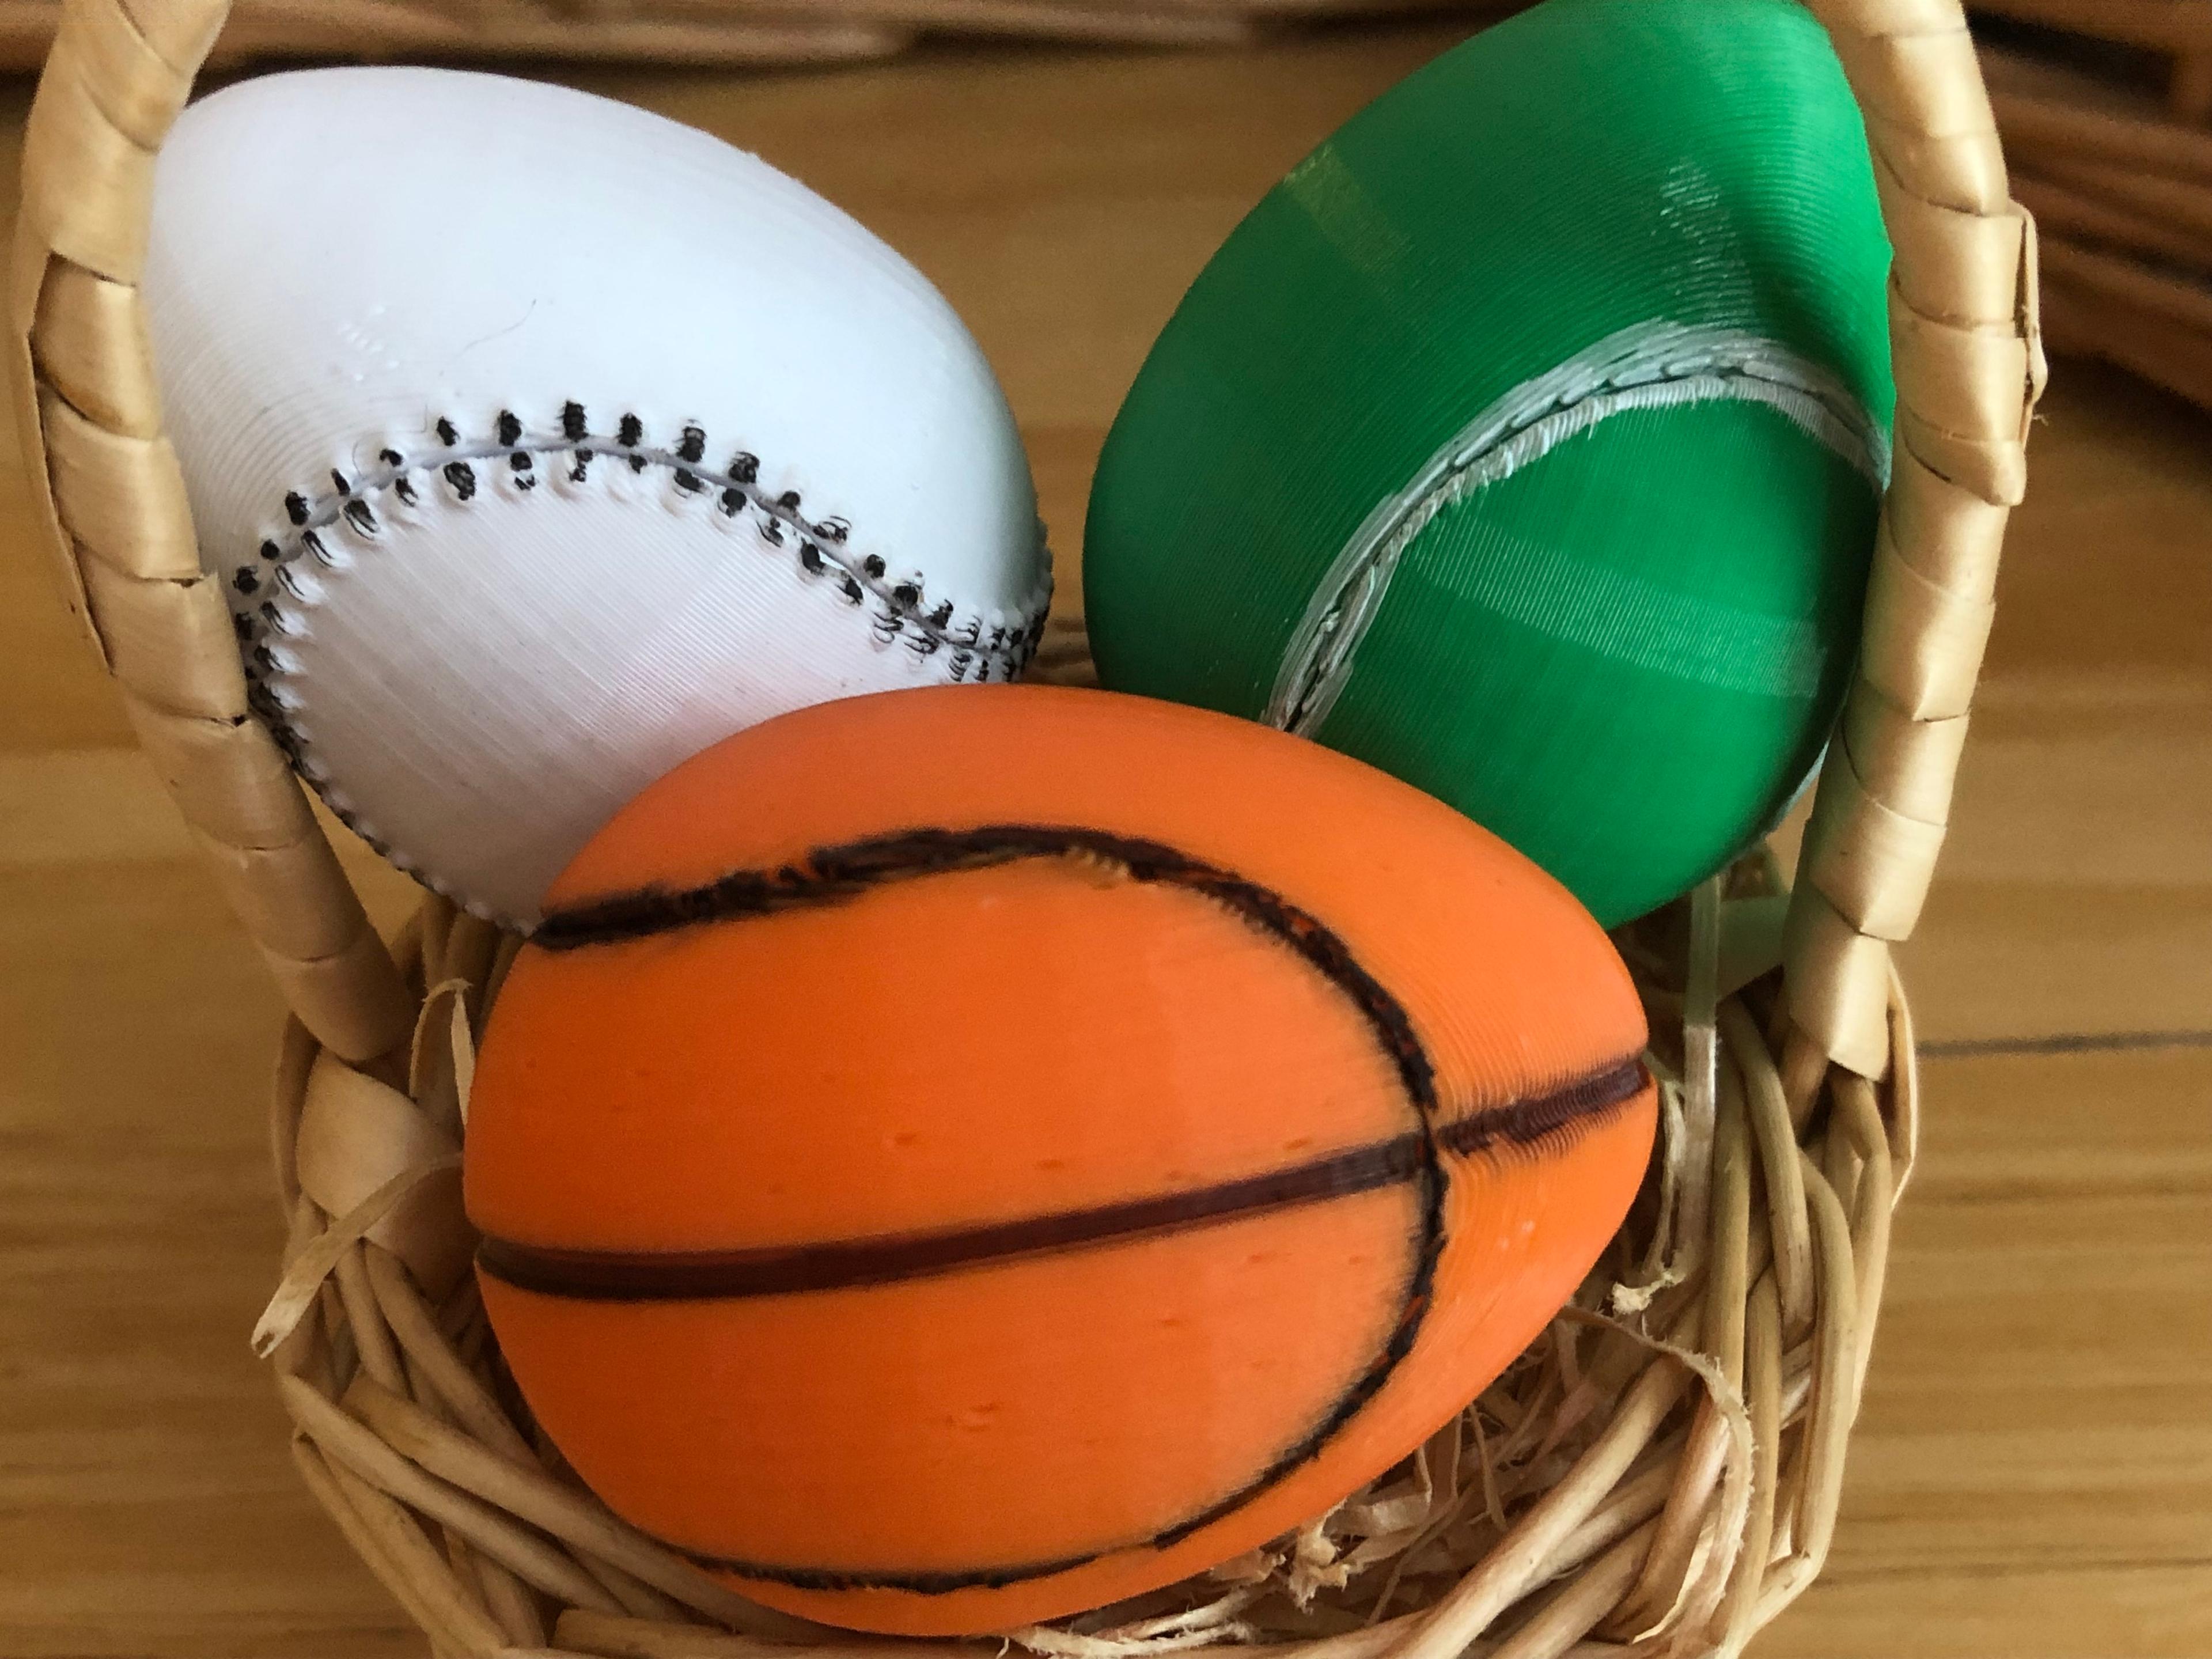 Eggball (Basketball) 3d model